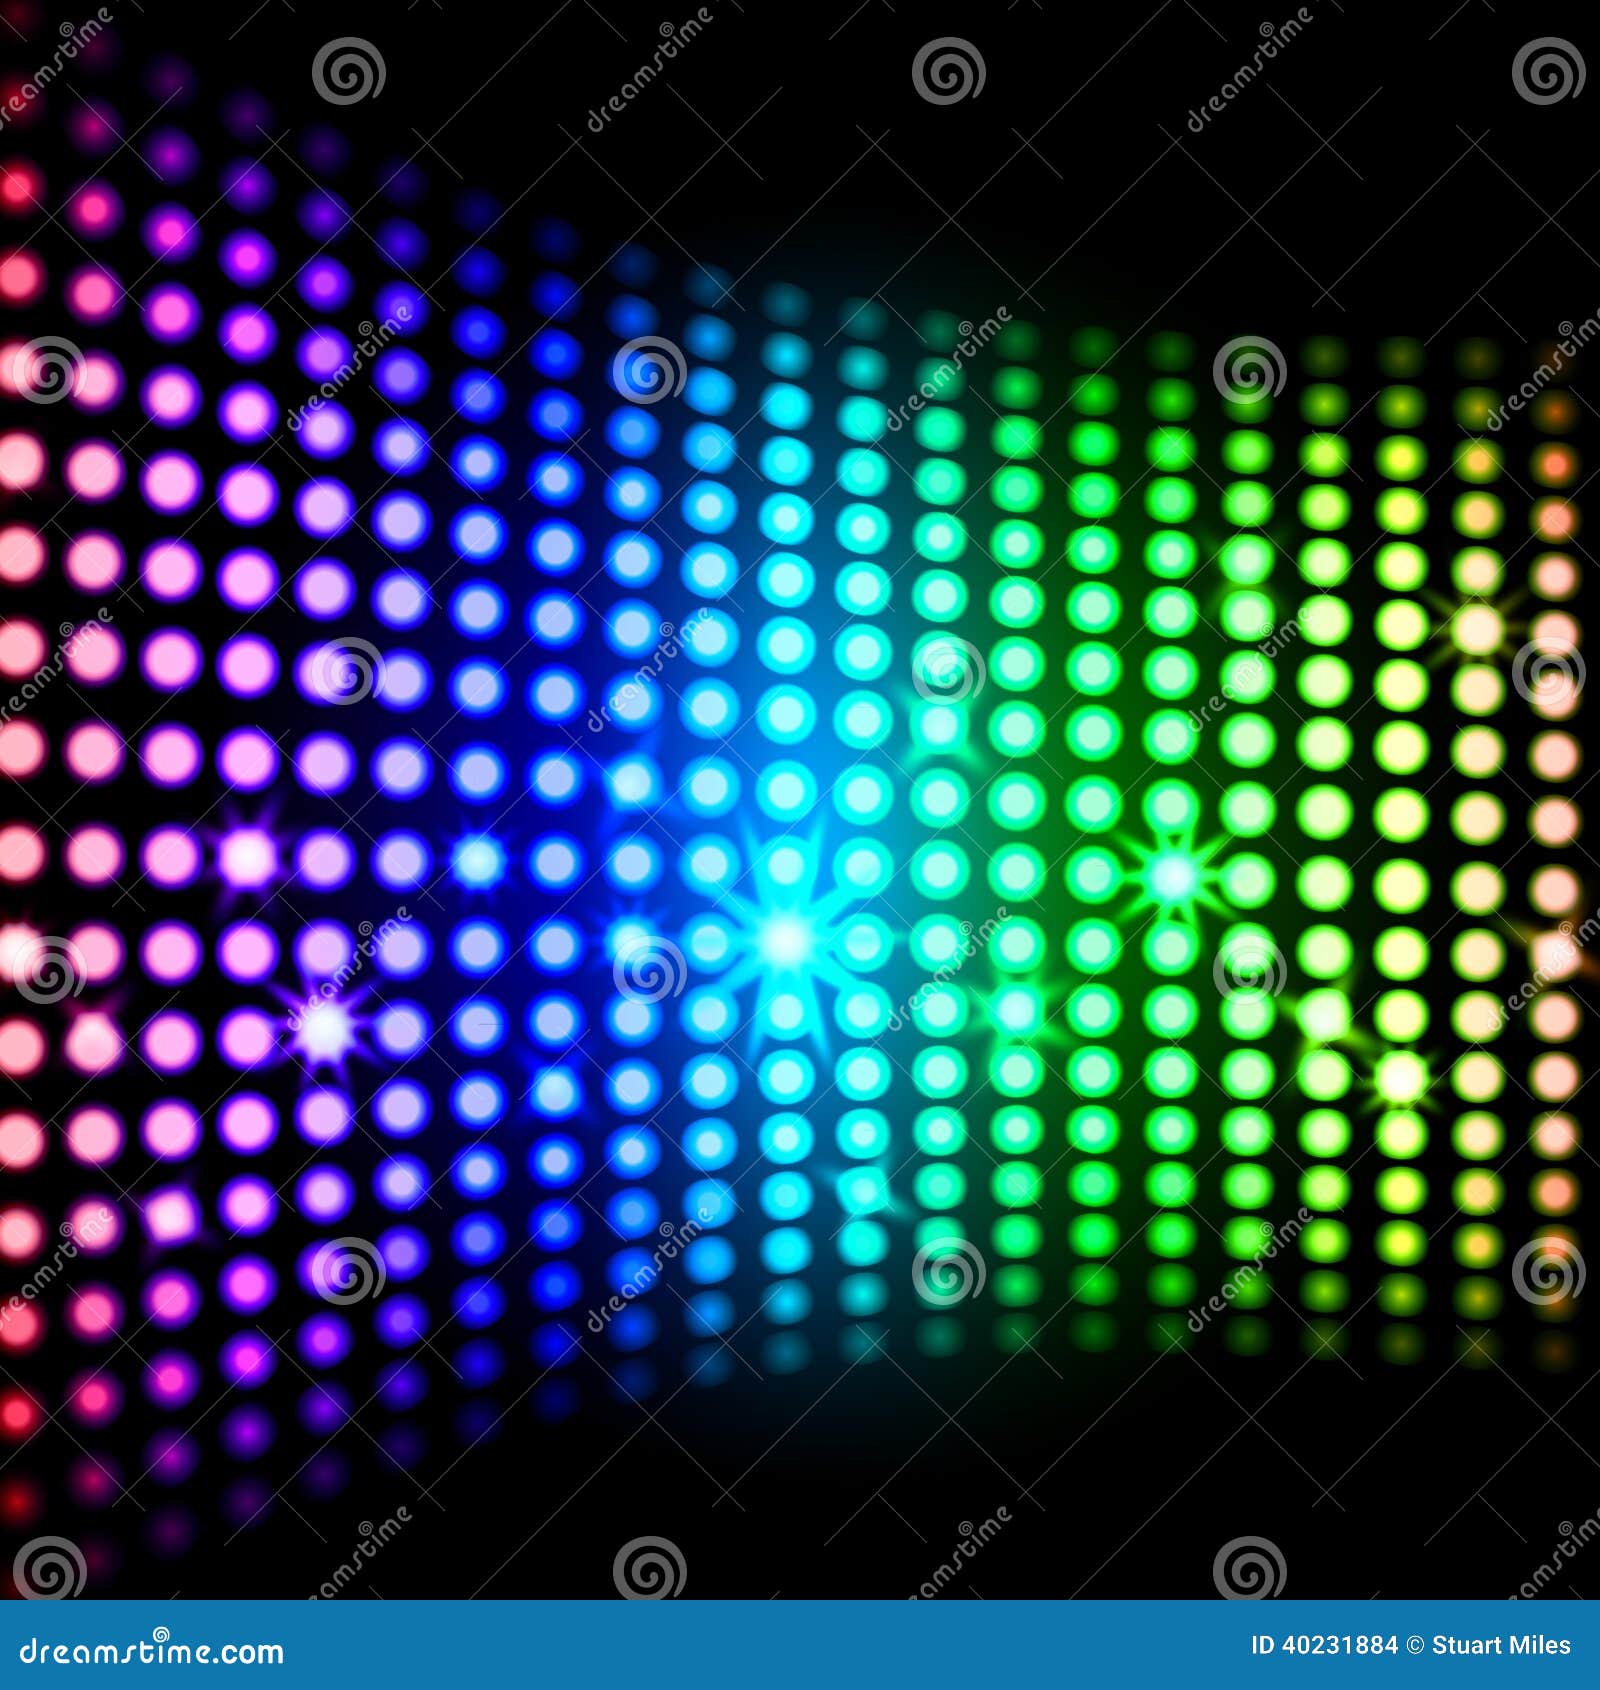 Những hình vuông sáng bừng trên nền Rainbow Light Squares Background sẽ giúp bạn tận hưởng cảm giác thật sự tuyệt vời. Được pha trộn từ nhiều màu sắc tương phản nhau, hình ảnh liên quan đến từ khóa này sẽ mang lại cho bạn cảm giác hưng phấn vô cùng đặc biệt.